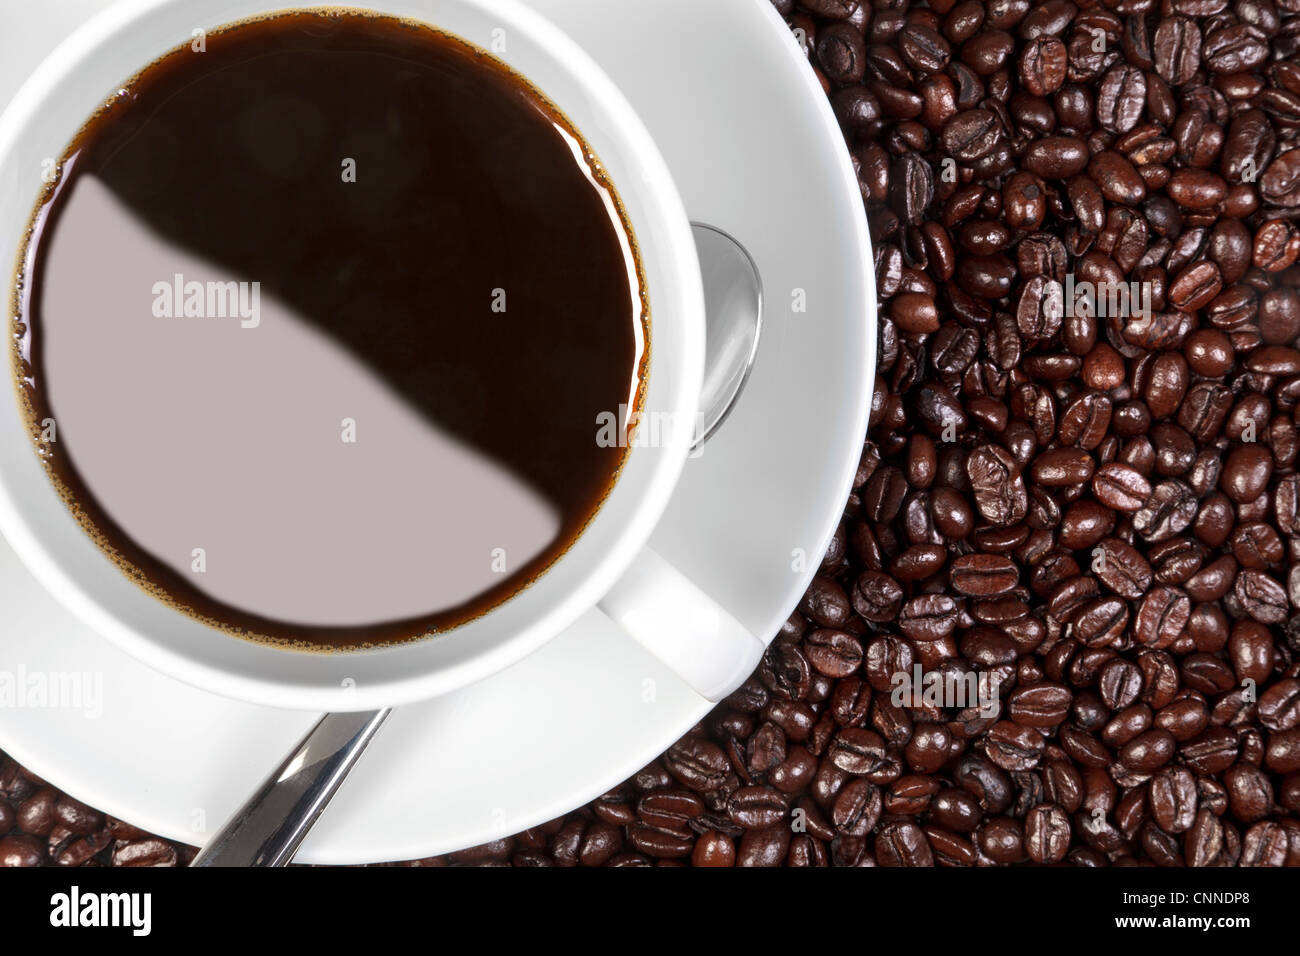 Foto aerea di una tazza di caffè seduti sulle carni arrosto di arabica e robusta i chicchi di caffè. Foto Stock